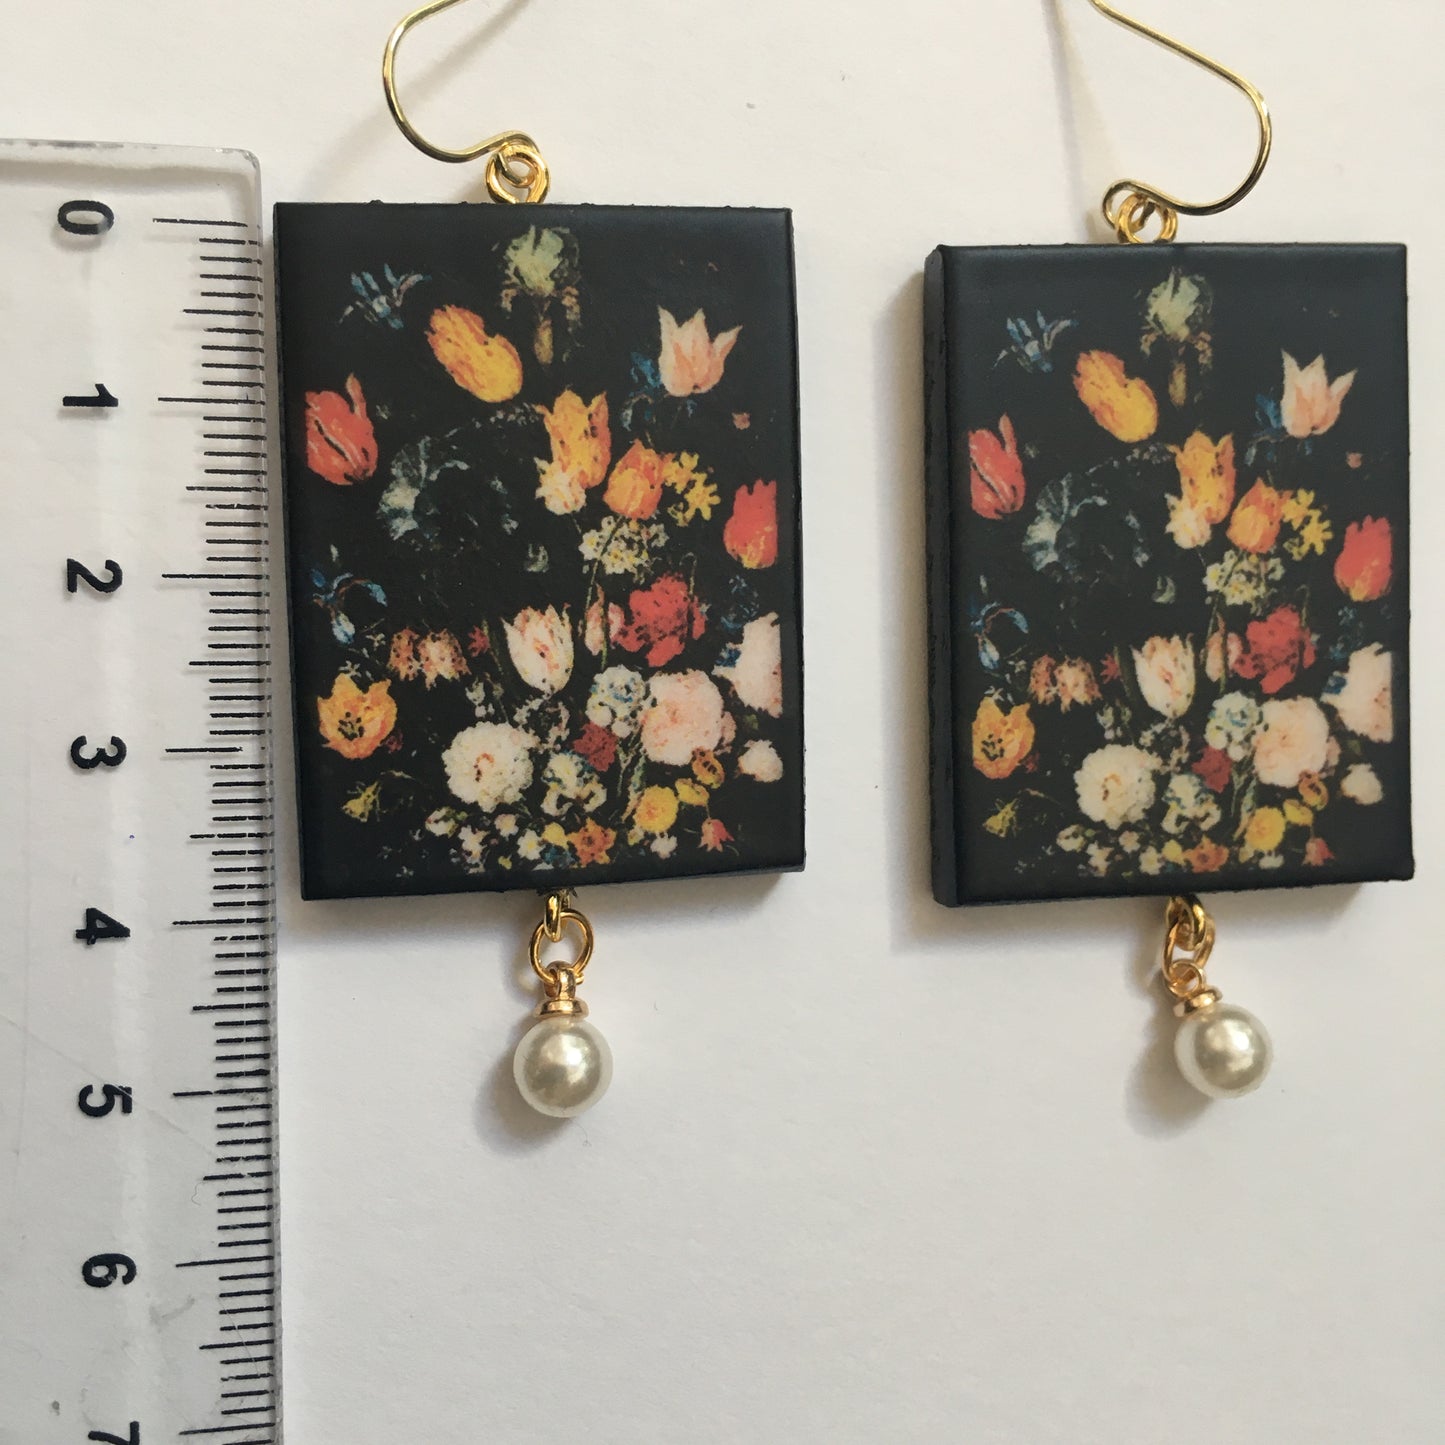 Still Life of Flowers earrings, Brueghel painting